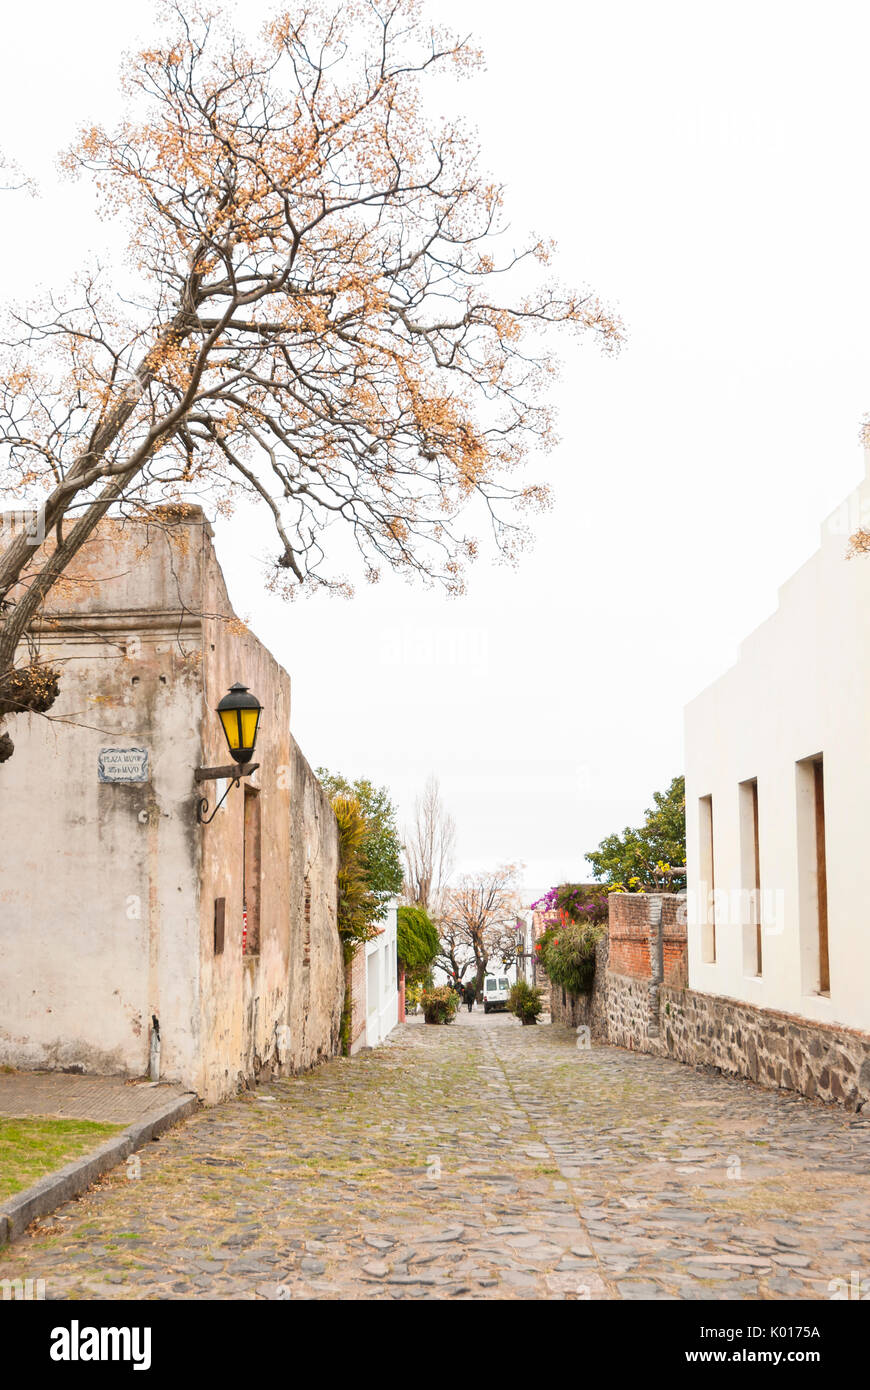 Colonial architecture in the cobbled streets of Colonia del Sacramento, Uruguay. UNESCO world heritage site Stock Photo